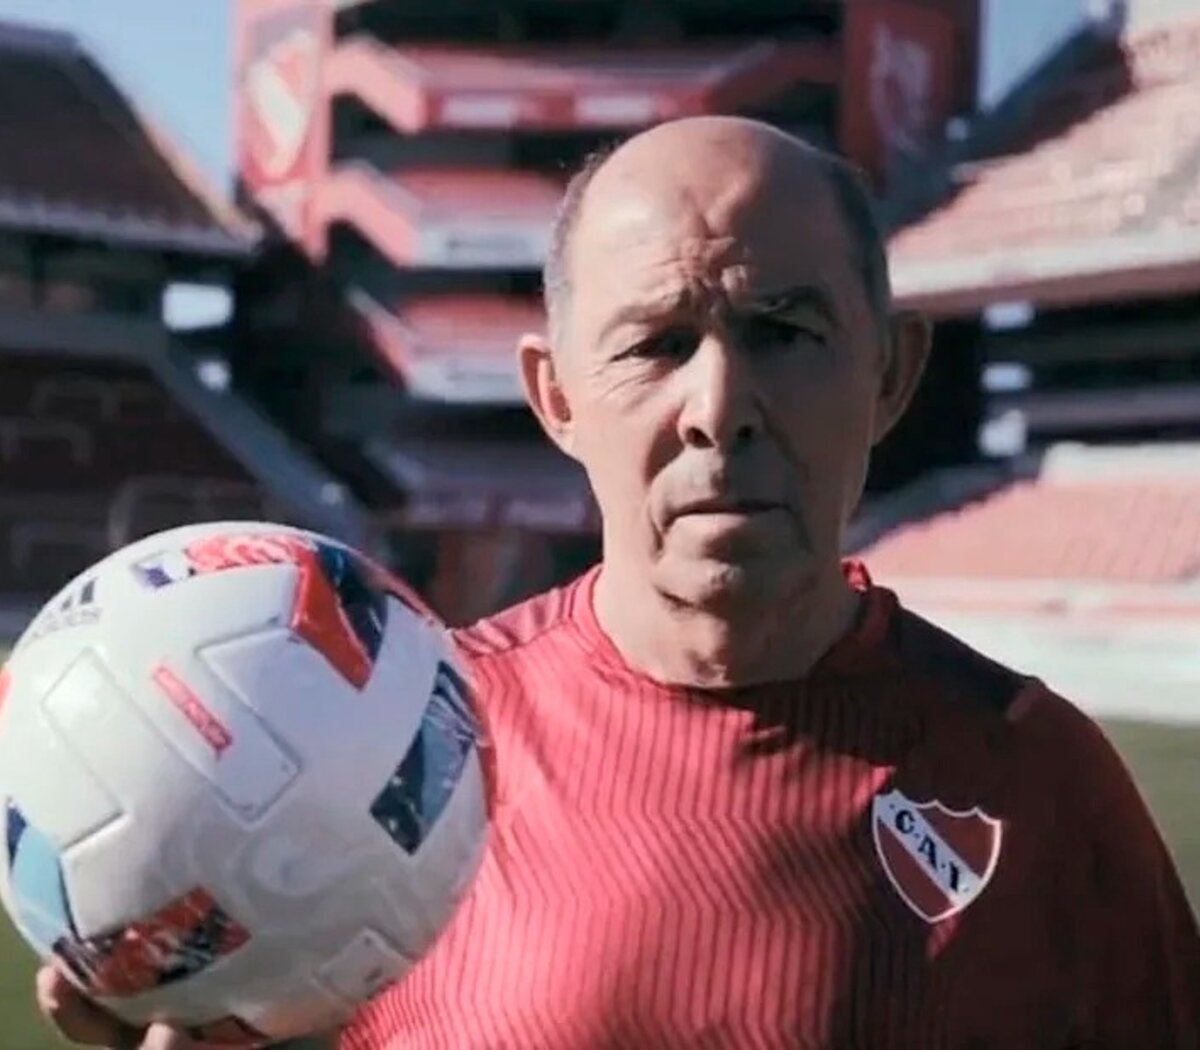 Proyecto Estadio del Club Atlético Independiente – Fernandez Prieto